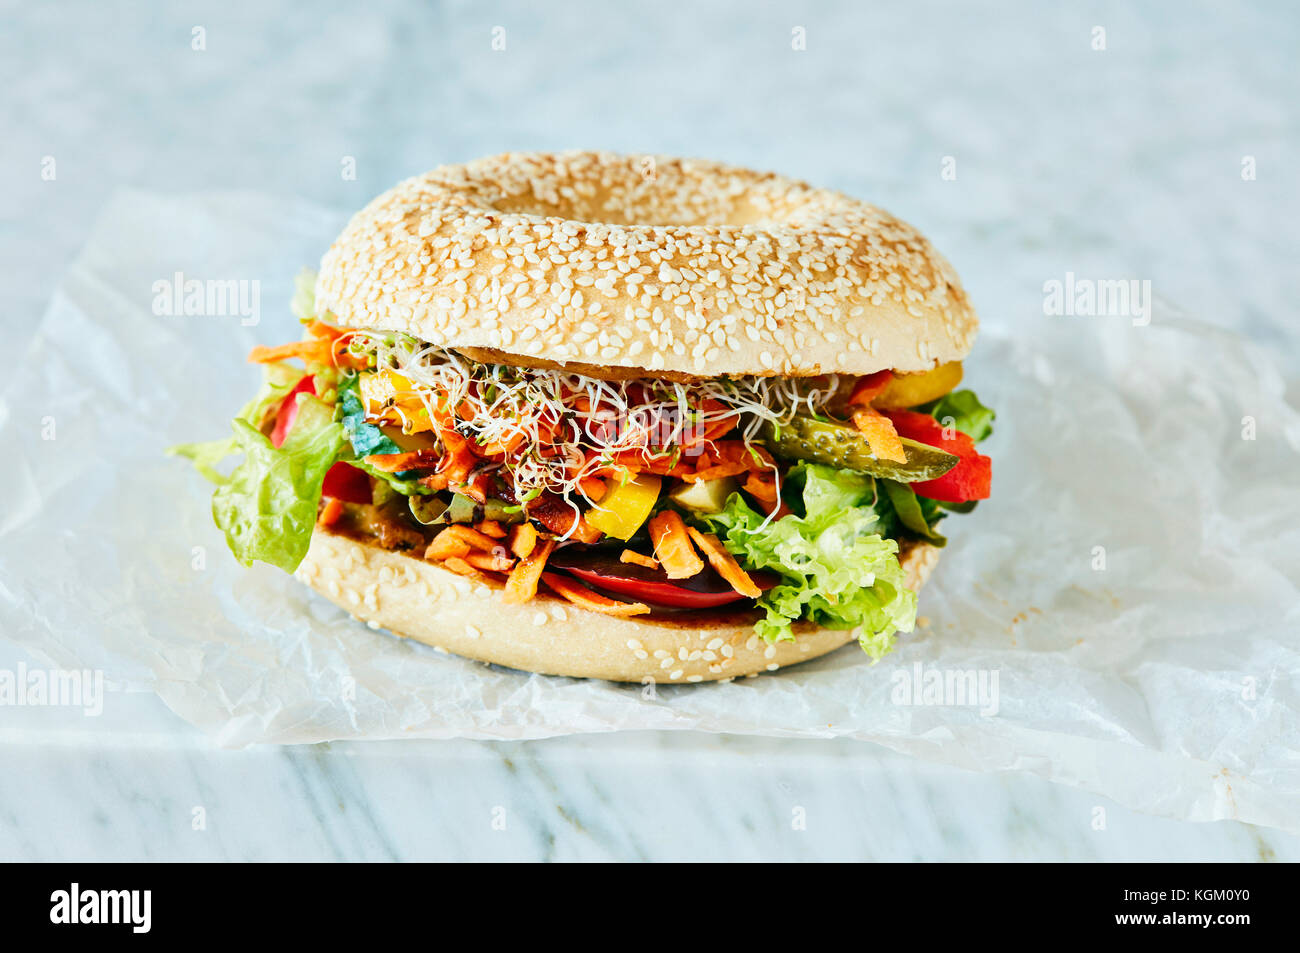 Close-up of fresh burger végétarien sur table Banque D'Images